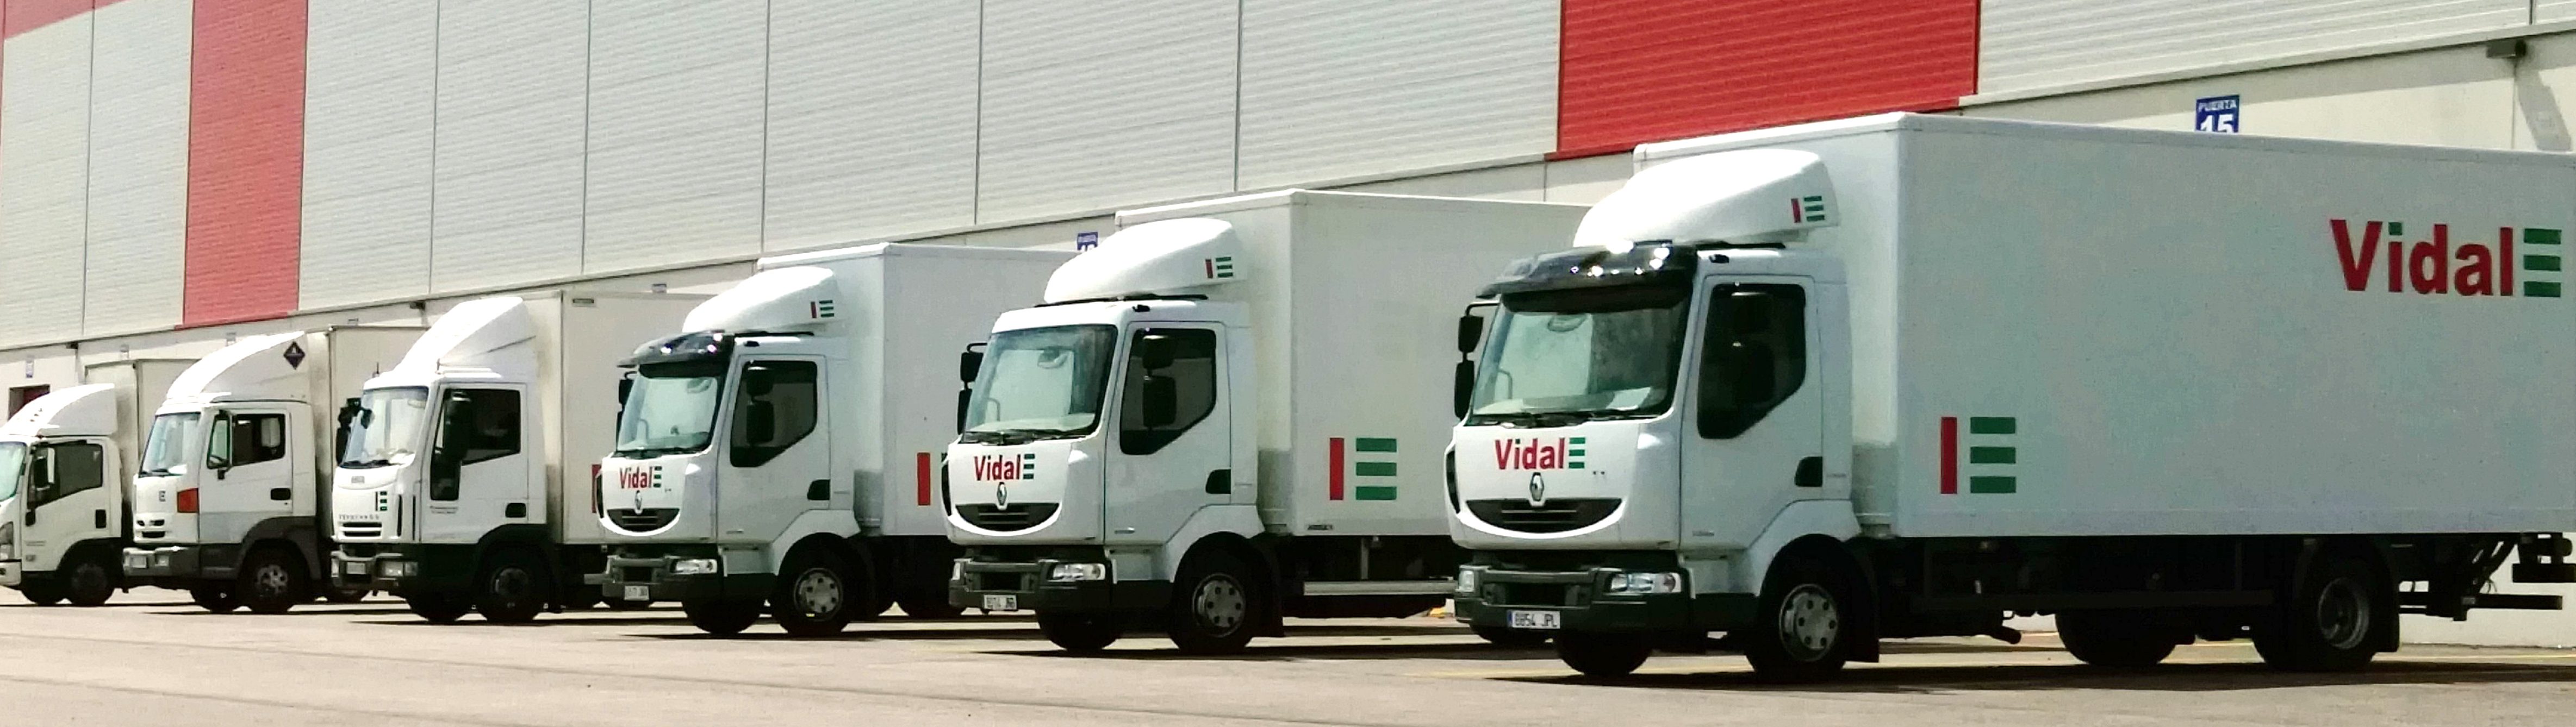 Vidal-Transporte internacional y nacional Alicante